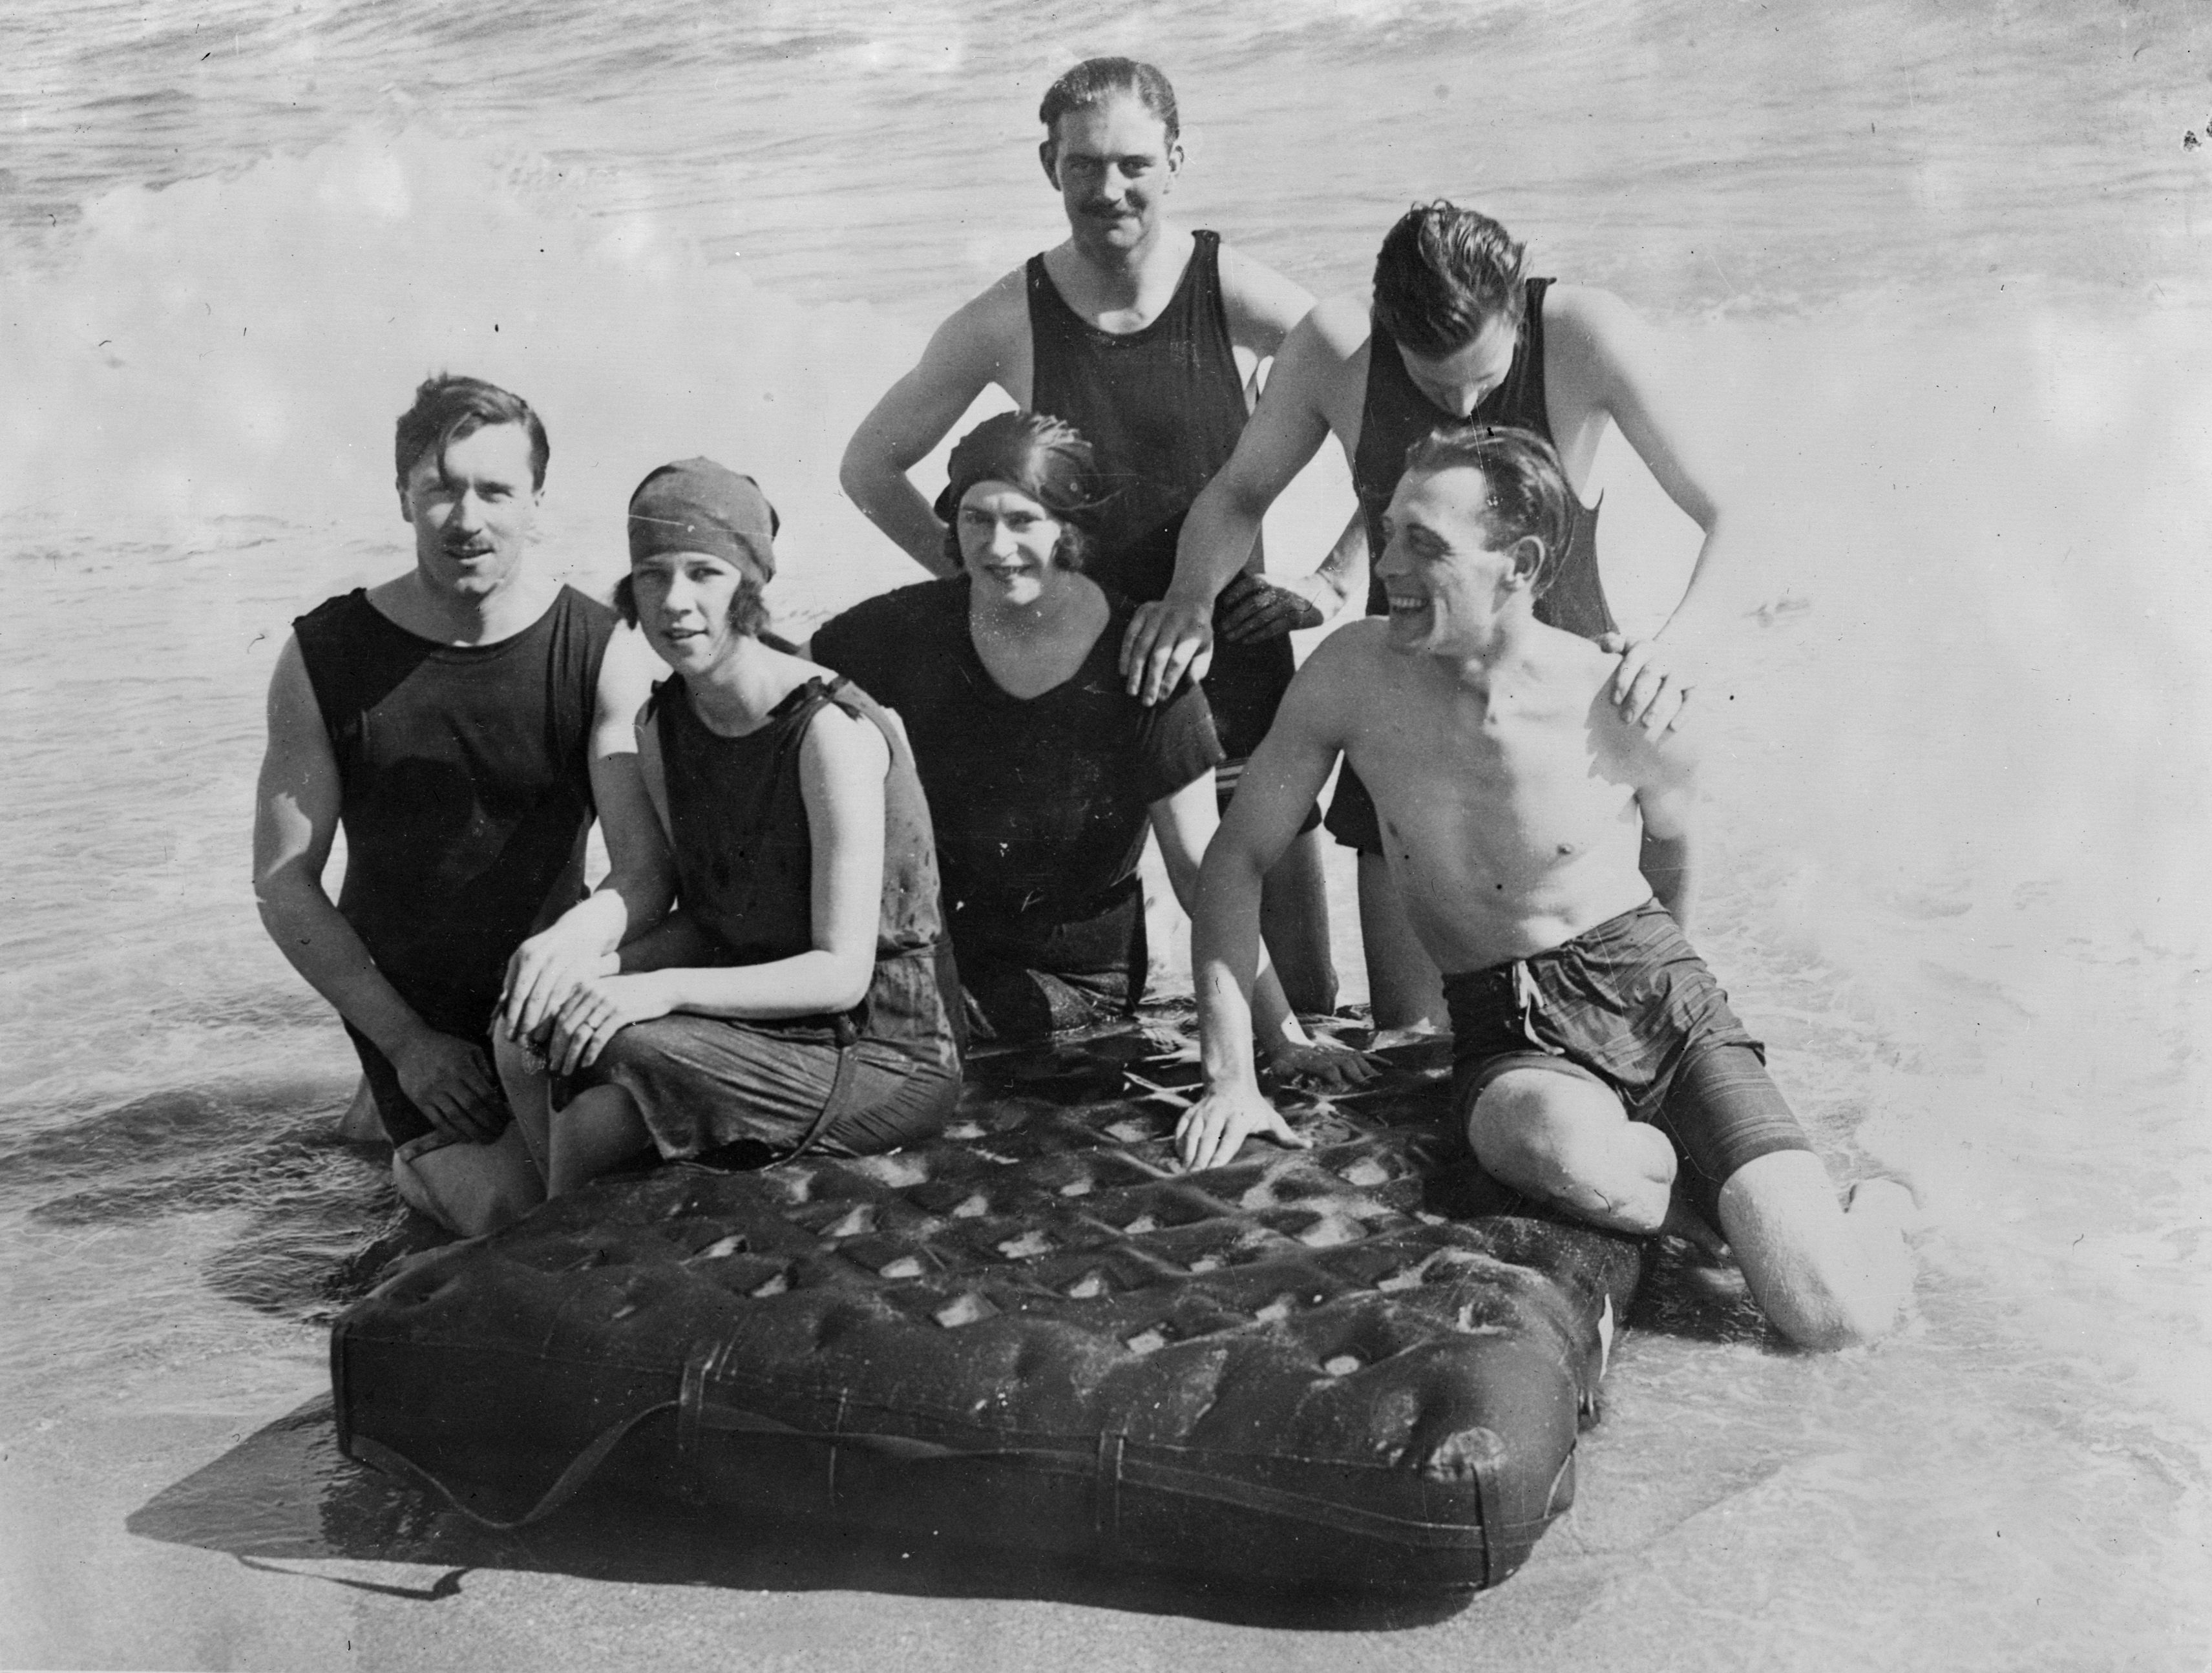 <p>В 1920-е годы пляжный отдых стал веселым времяпрепровождением и даже светским событием. На берегу играли в бадминтон, а по воде передвигались на матрасах. Дресс-код трансформировался в сторону большей открытости: мужчины и женщины теперь&nbsp;носили короткие купальные комбинезоны</p>